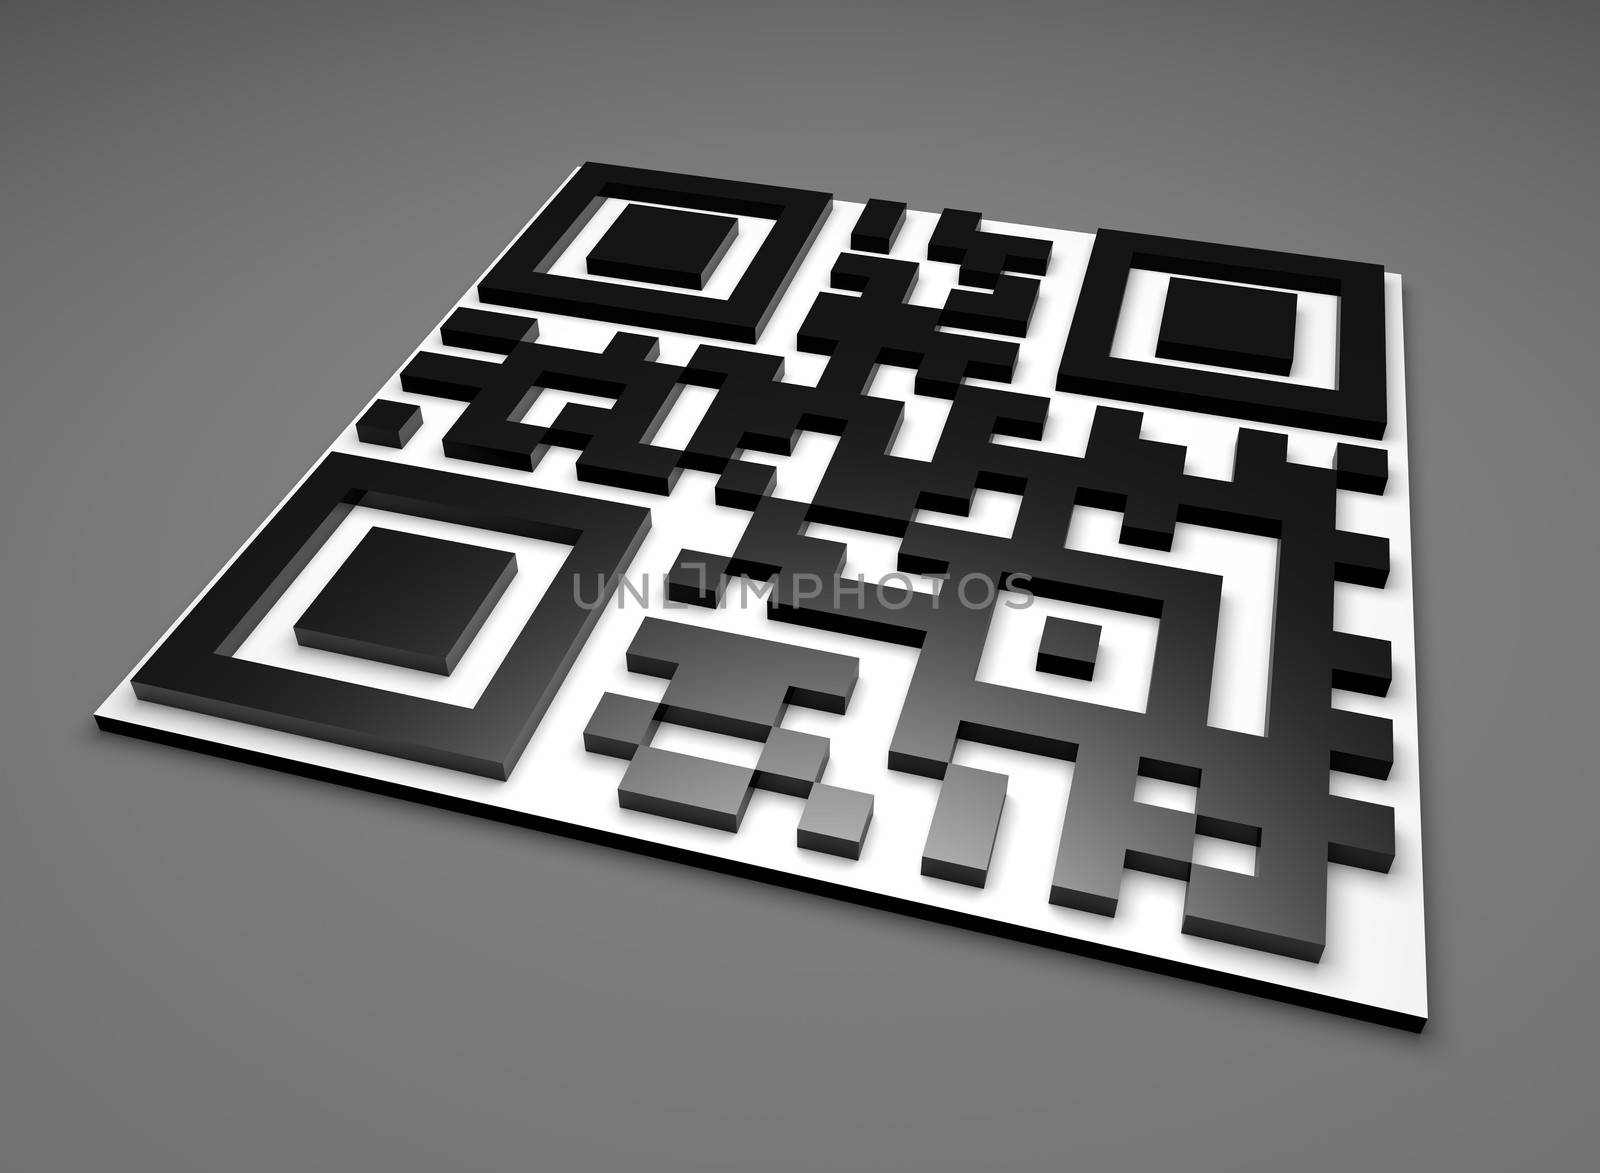 3D QR Code Tile on Gray Illustration